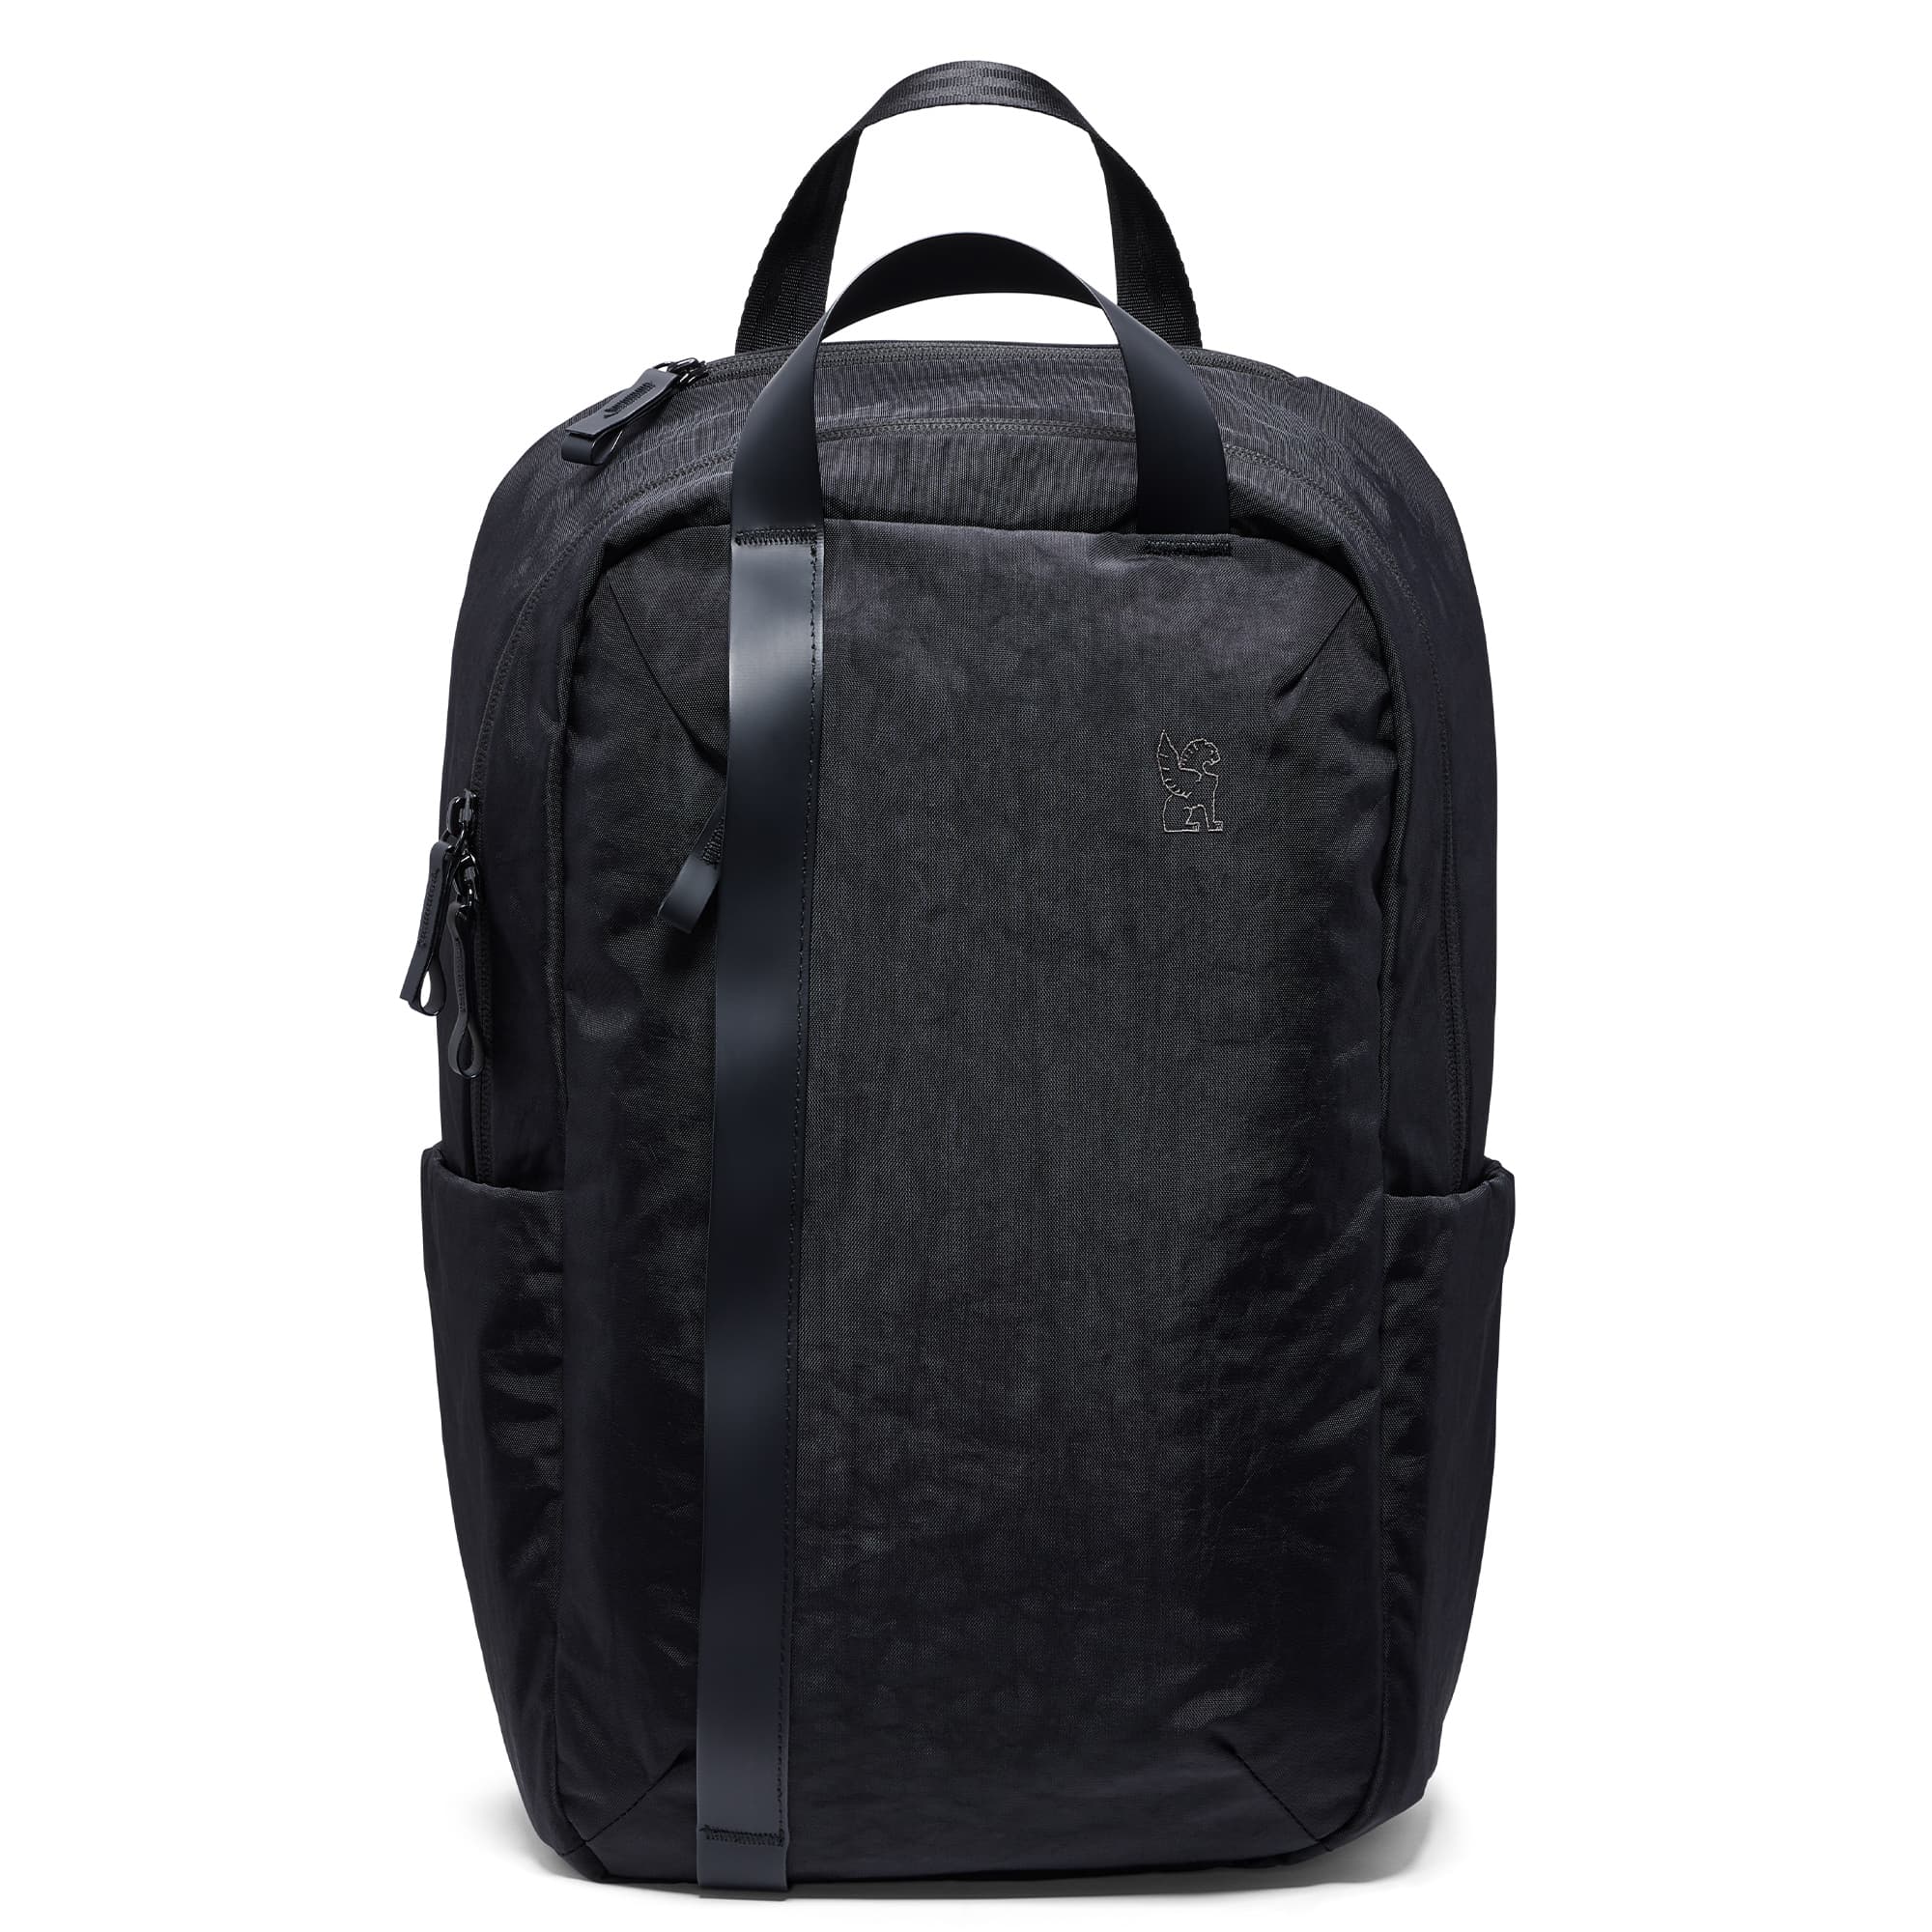 Highline 20L backpack front view in black #color_black